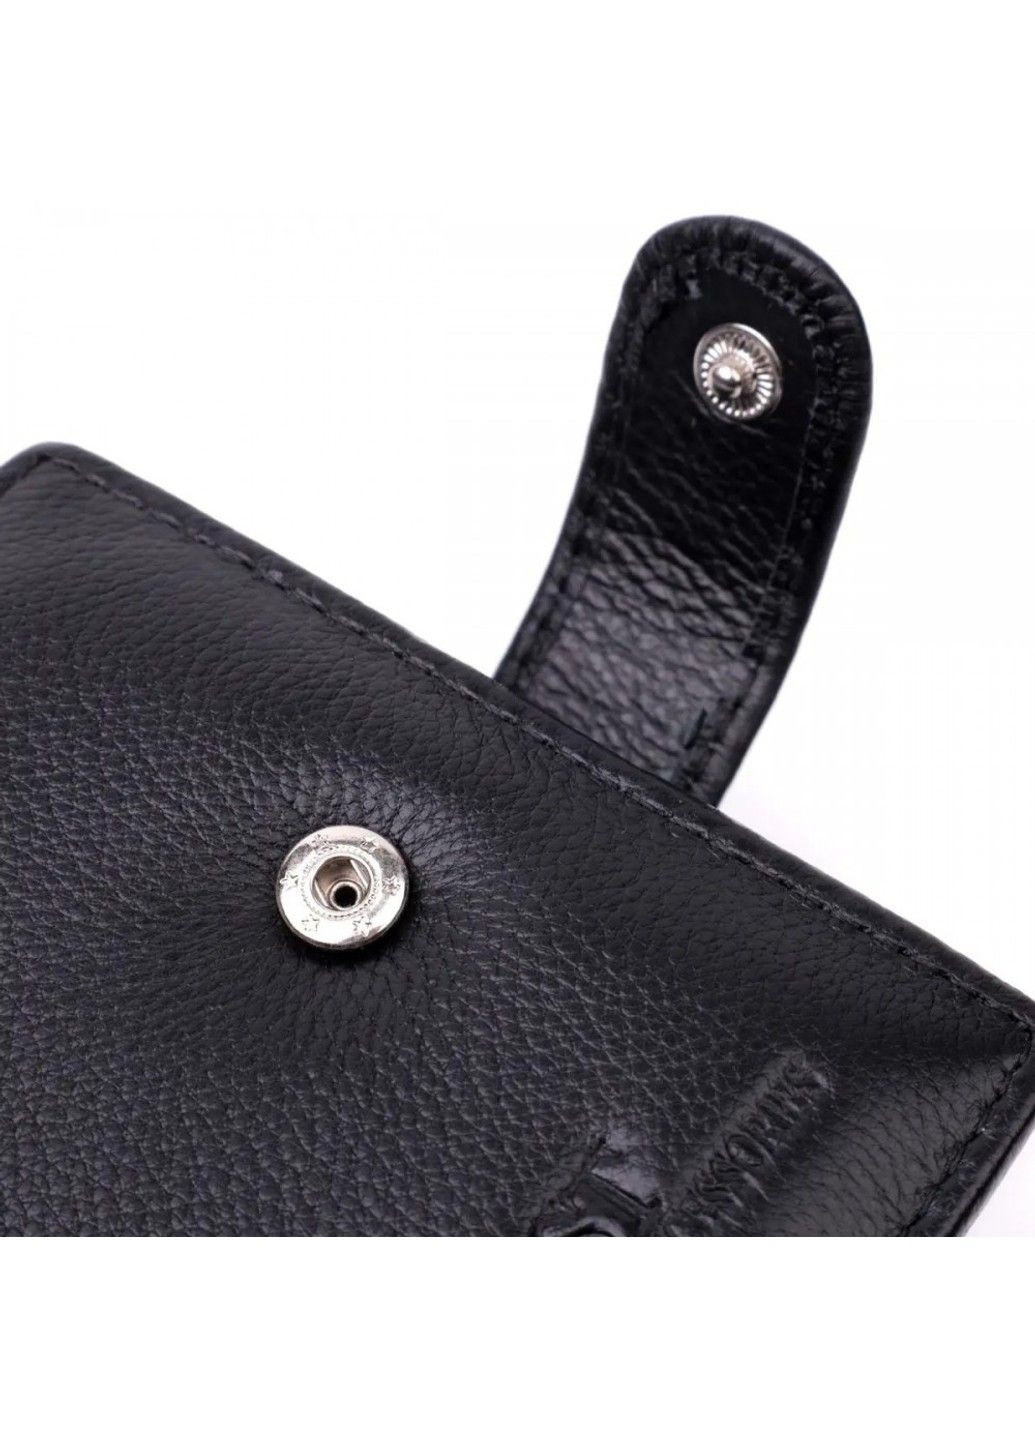 Мужской кожаный кошелек ST Leather 22443 ST Leather Accessories (278274812)